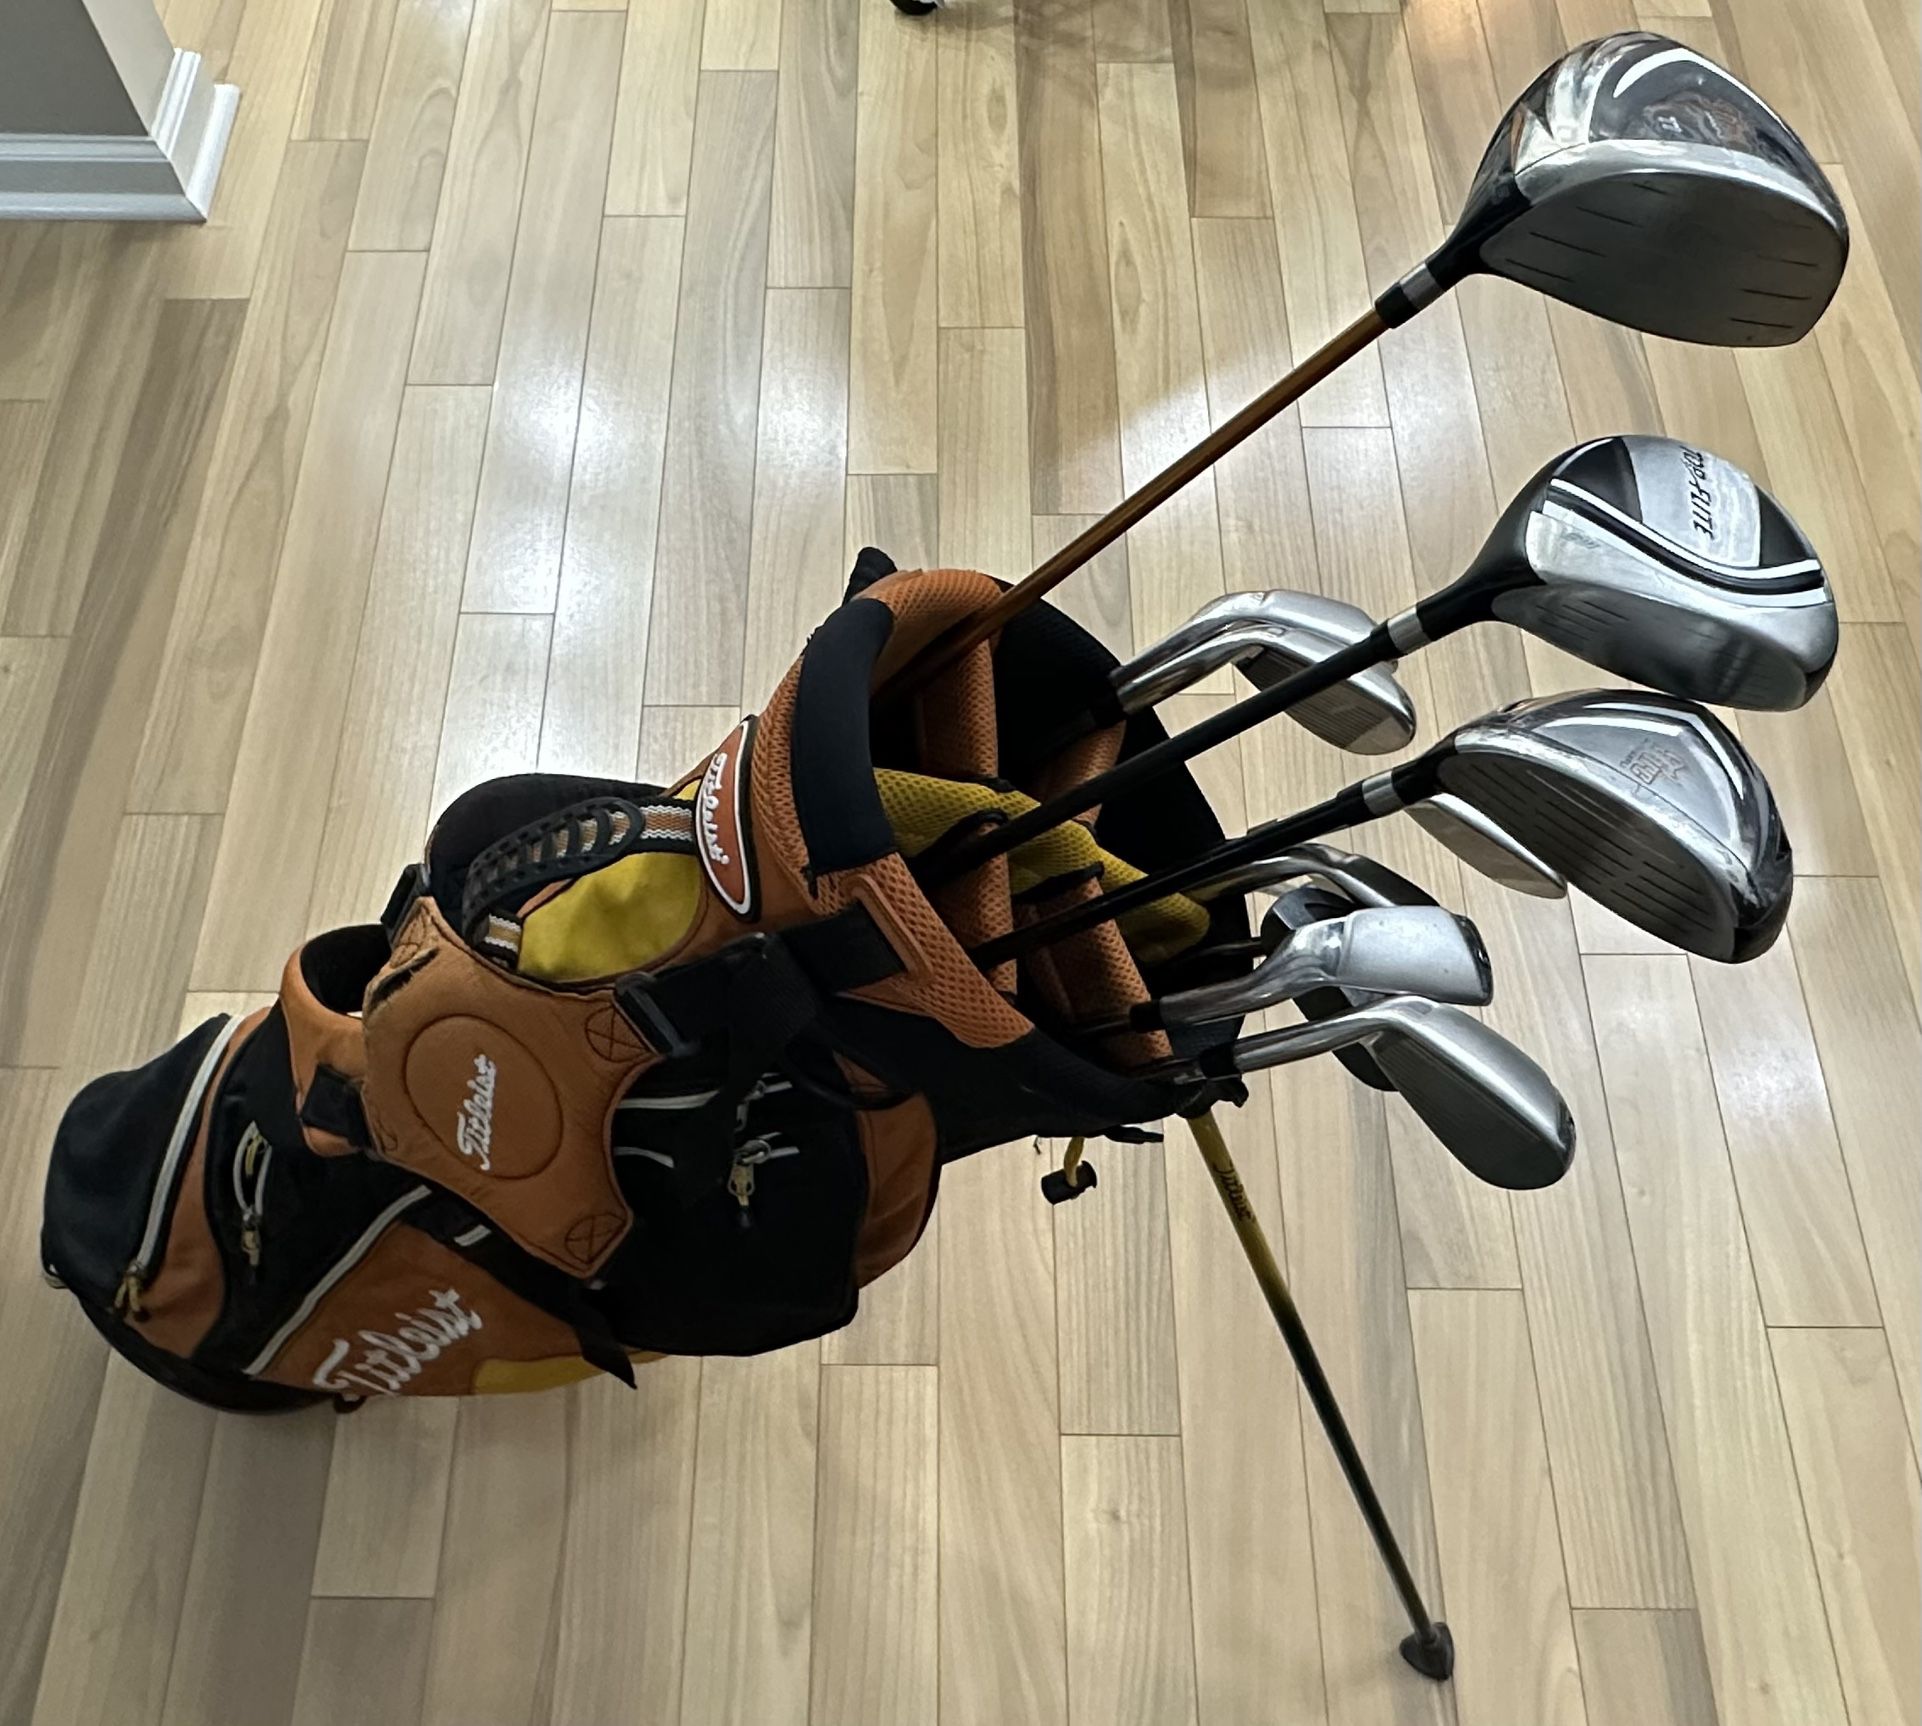 Full Golf Set w/ Stand Bag - Maxfli, Top Flite, Dunlop